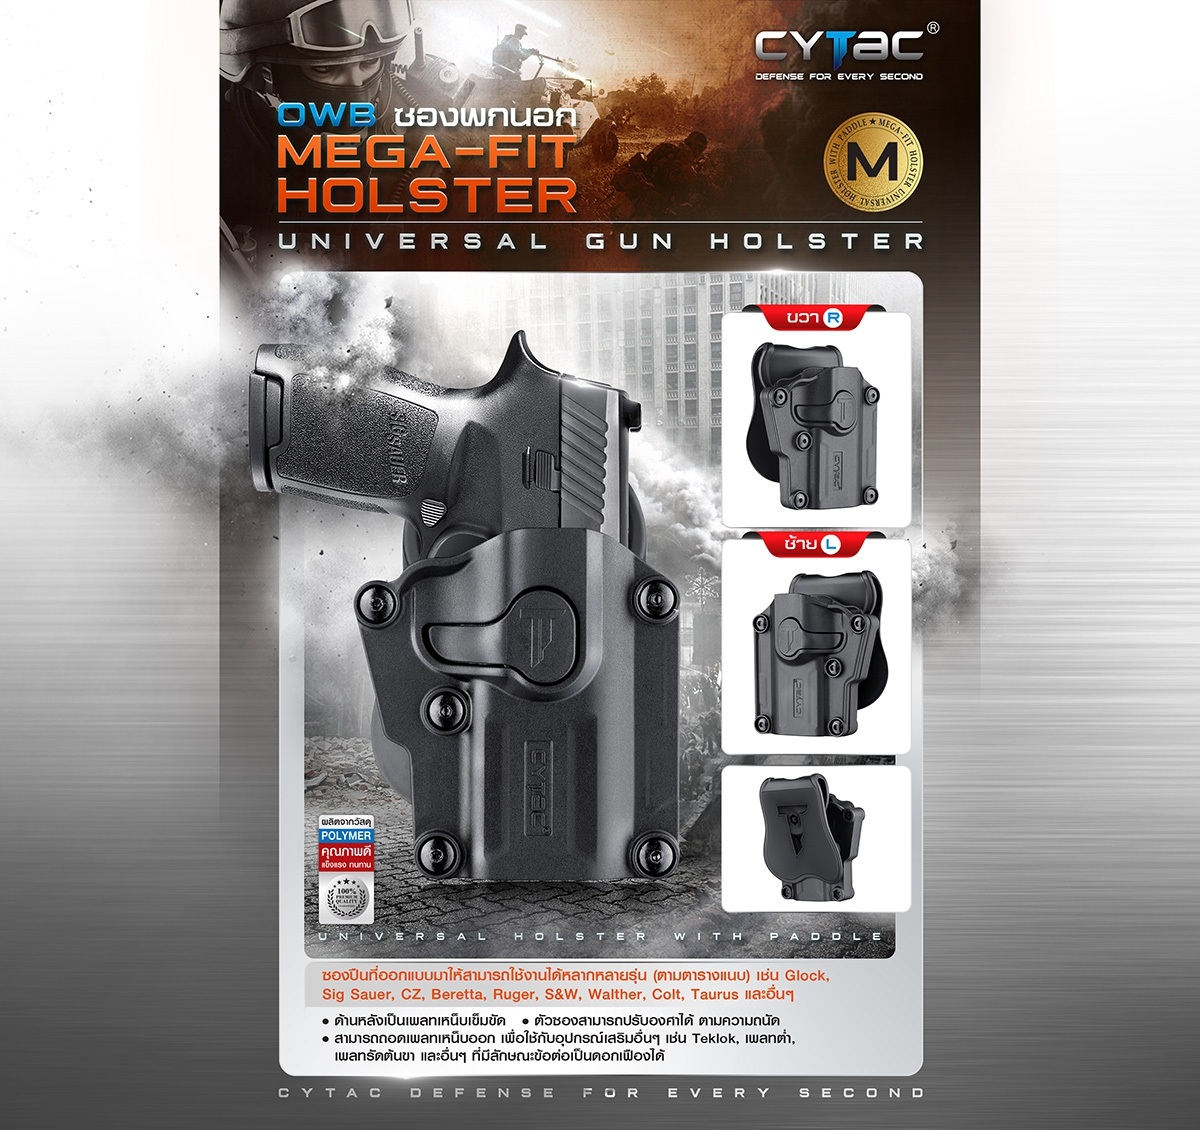 ซองพกนอก Cytac Mega Fit Holster ซองปืนที่ออกแบบมาให้สามารถใช้งานได้หลากหลายรุ่น ถูกออกแบบให้ปลดล็อคนิ้วชี้ Level 2 ซองปืน ซองปืนพกนอก Update 25/07/64